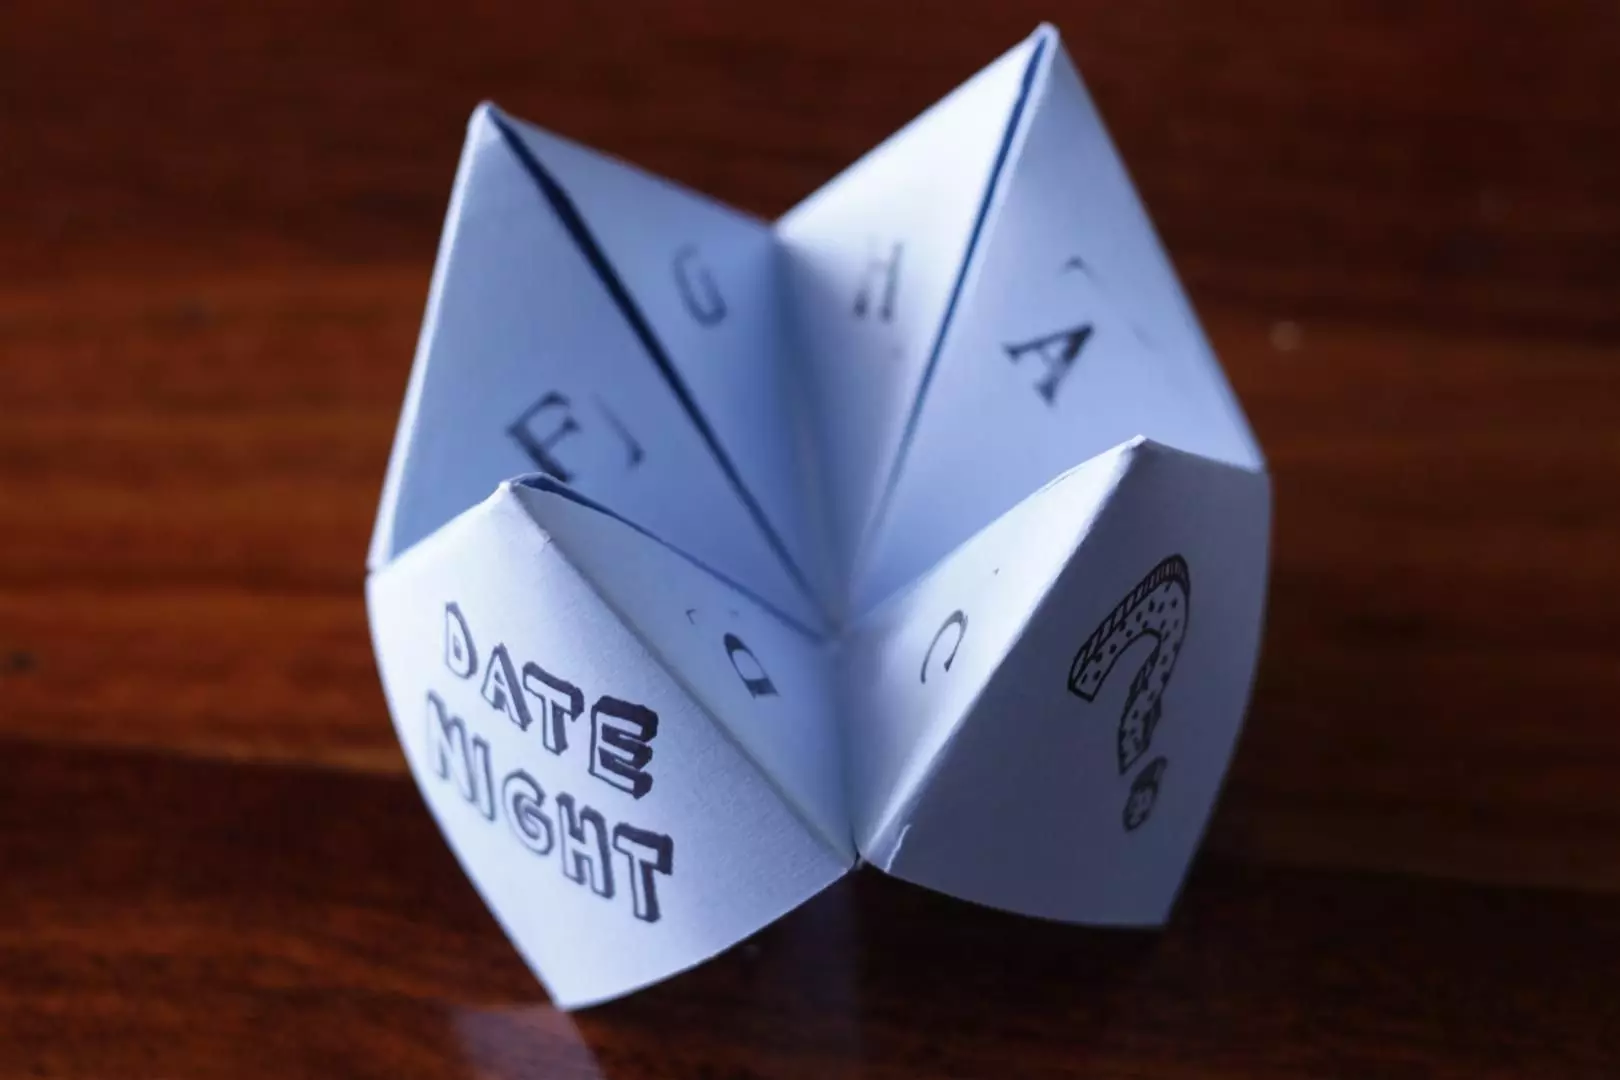 Origami (97 mafoto): Chii icho? Manhamba naKurume 8 yebhuku rekunyorera. Mhando dzeJapan Art Folding mapepa mapepa. Maitiro Ekuita Zvakasiyana Nhamba? 26950_64